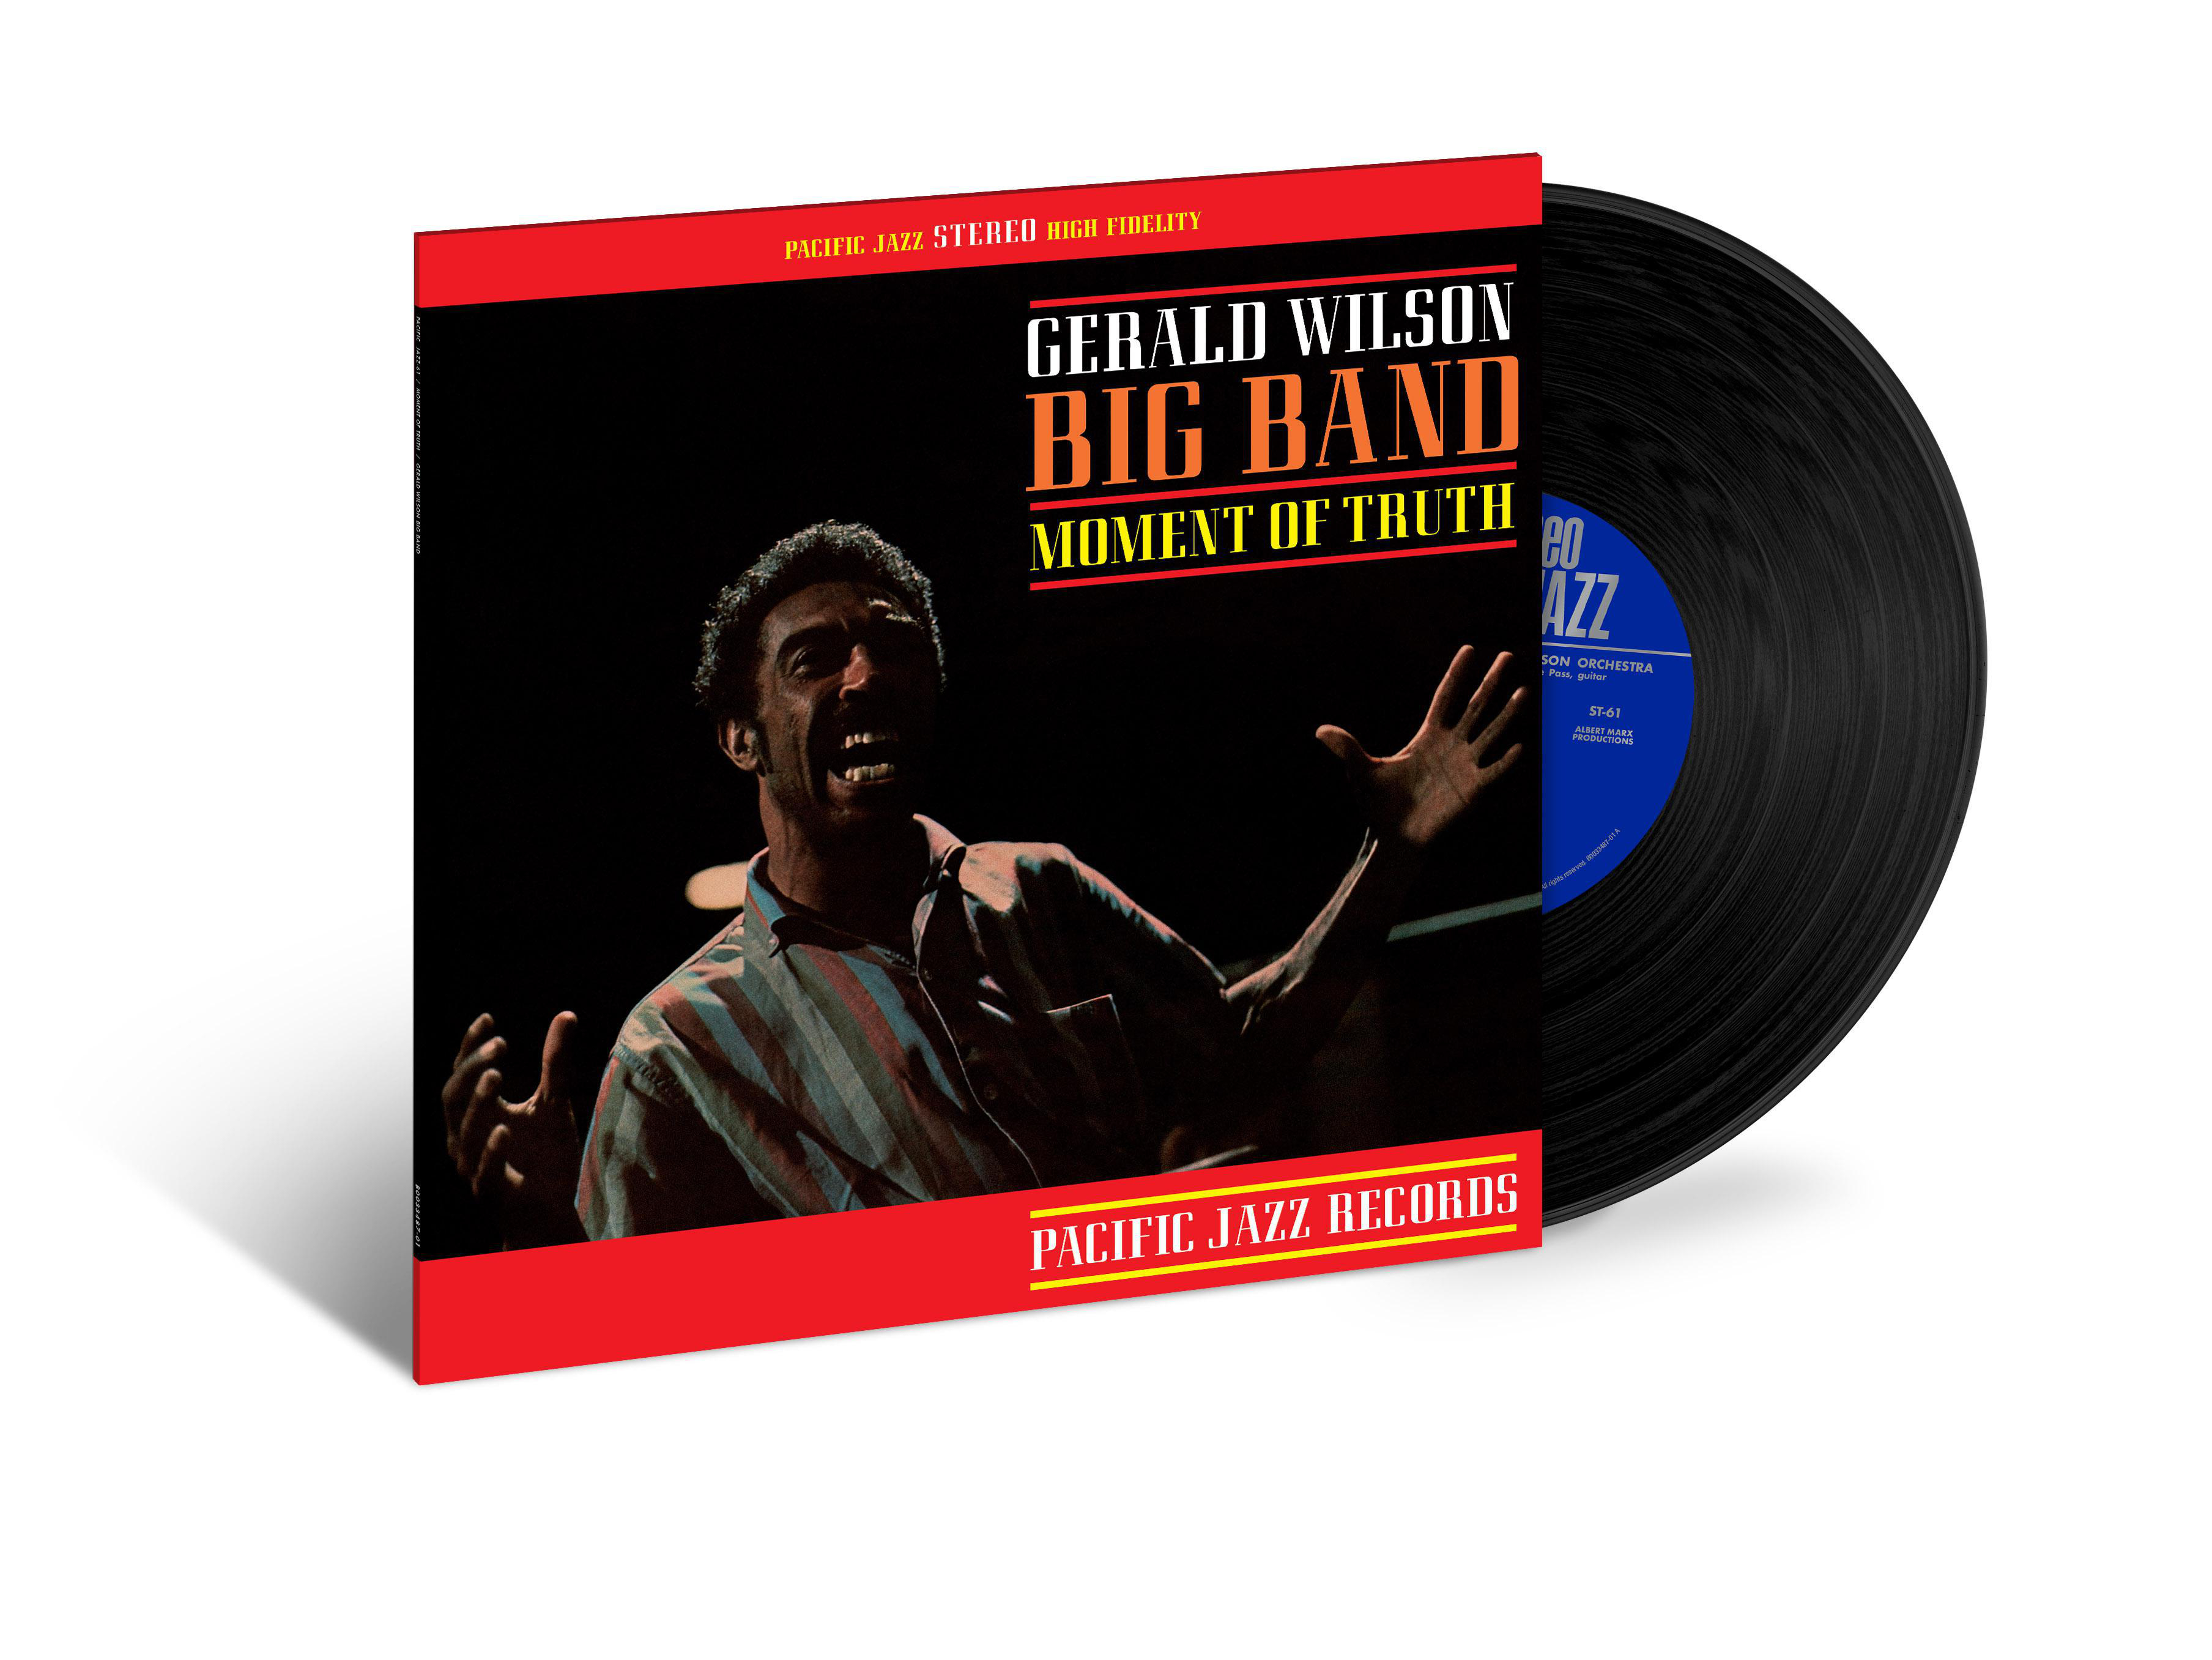 Gerald Wilson (Tone Poet - - Of Moment Vinyl) (Vinyl) Truth